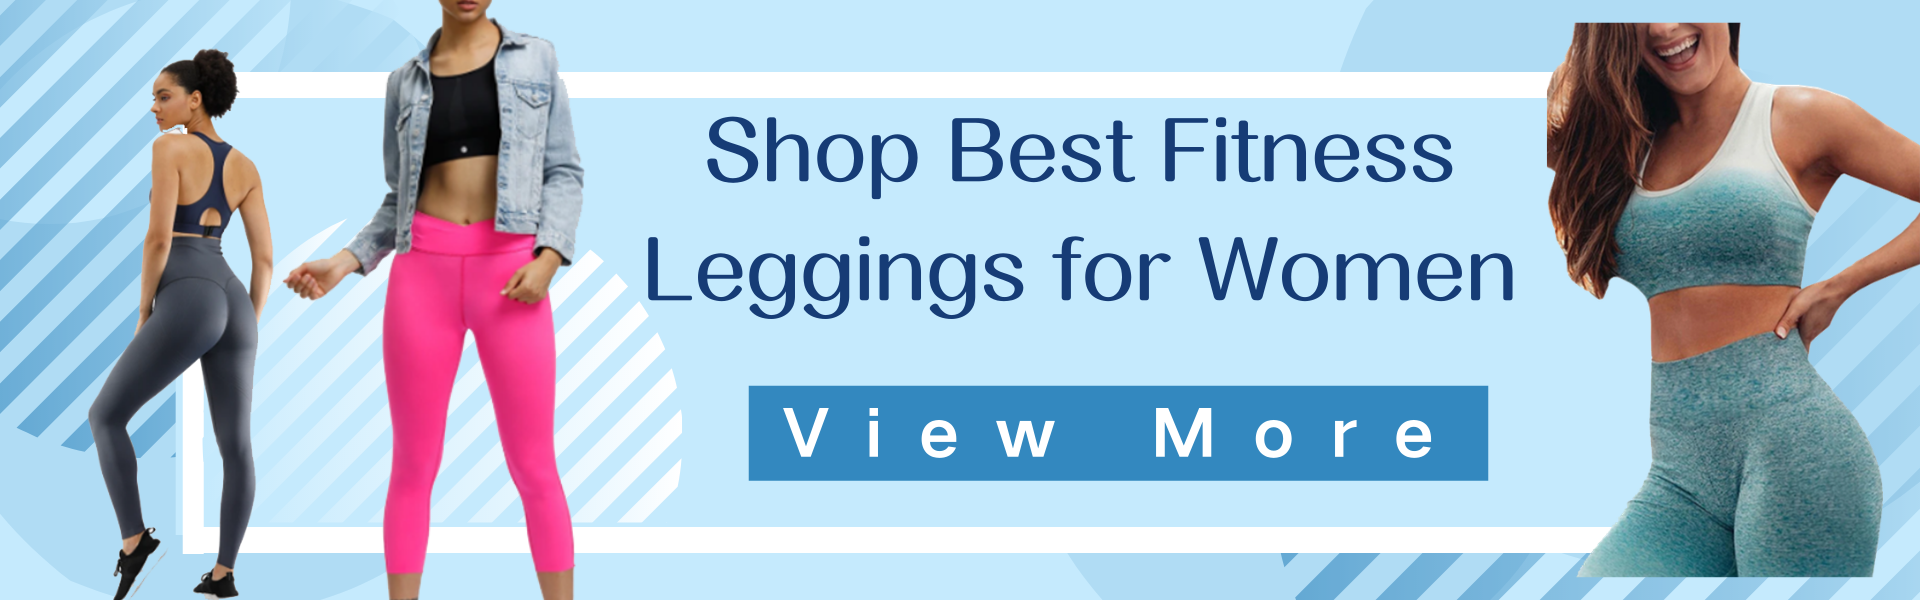 Shop Best Fitness Leggings for Women